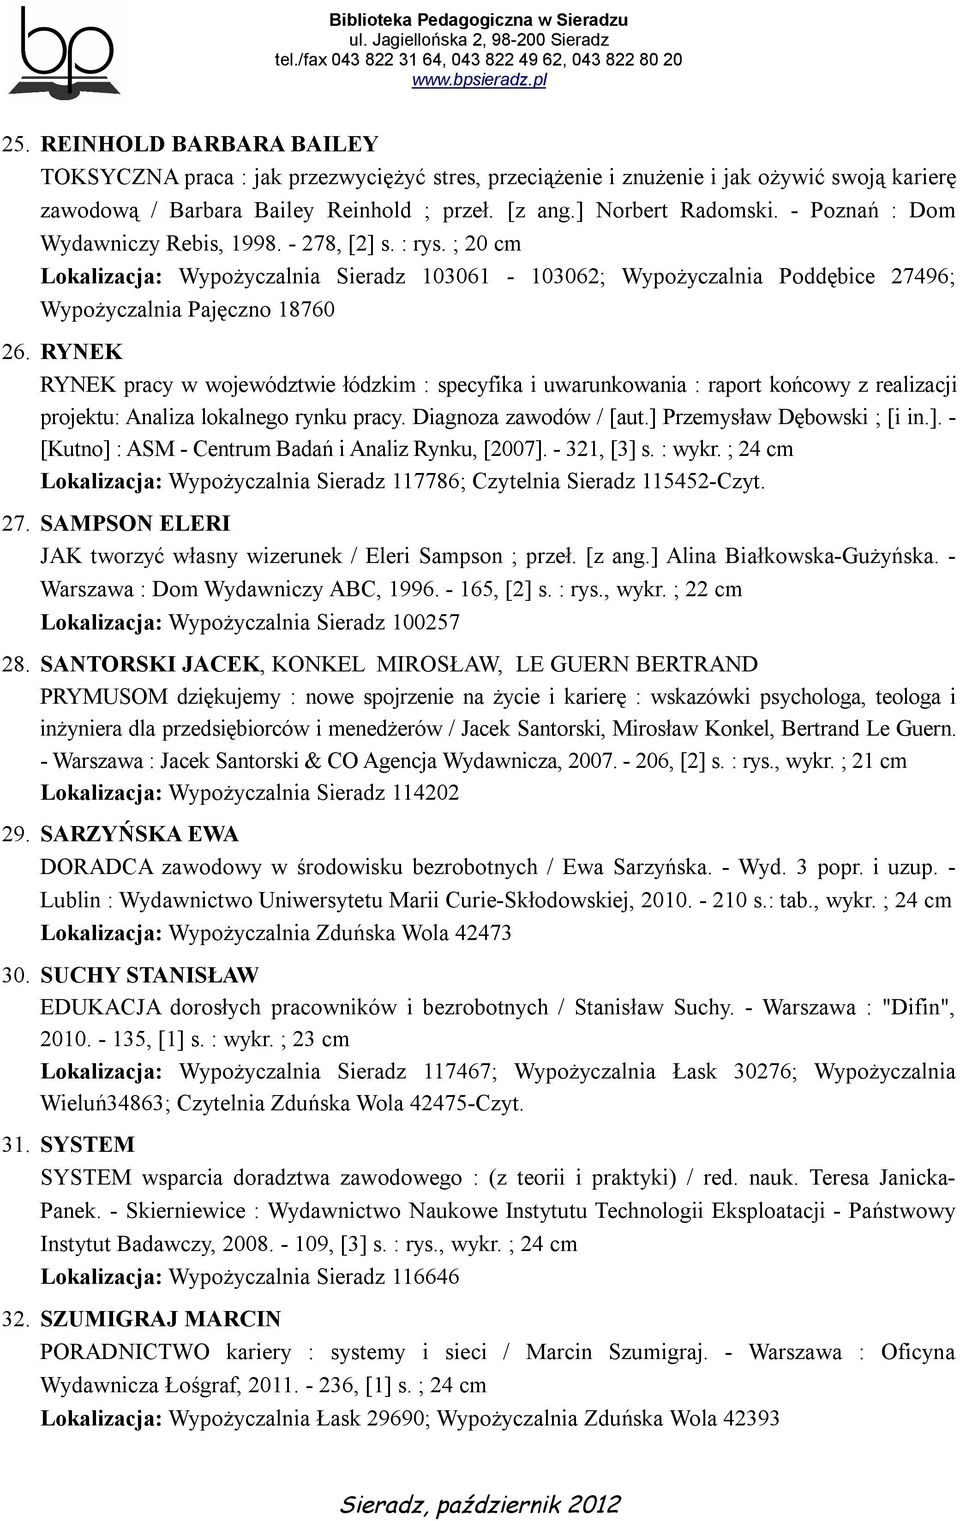 RYNEK RYNEK pracy w województwie łódzkim : specyfika i uwarunkowania : raport końcowy z realizacji projektu: Analiza lokalnego rynku pracy. Diagnoza zawodów / [aut.] 